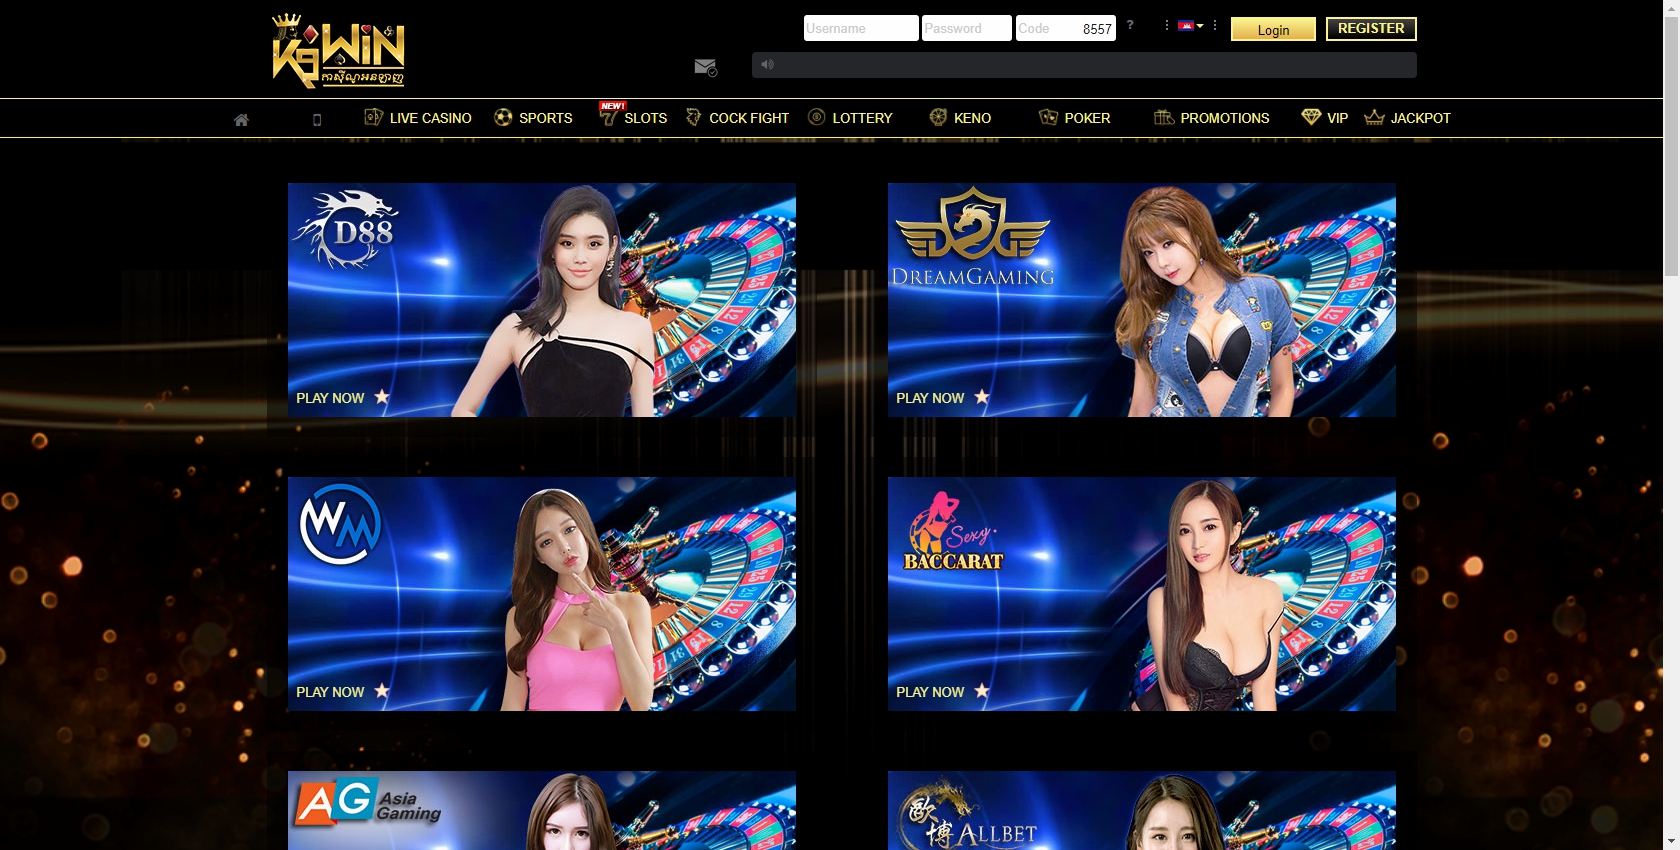 K9WIN Casino Vietnam Live Dealer Games